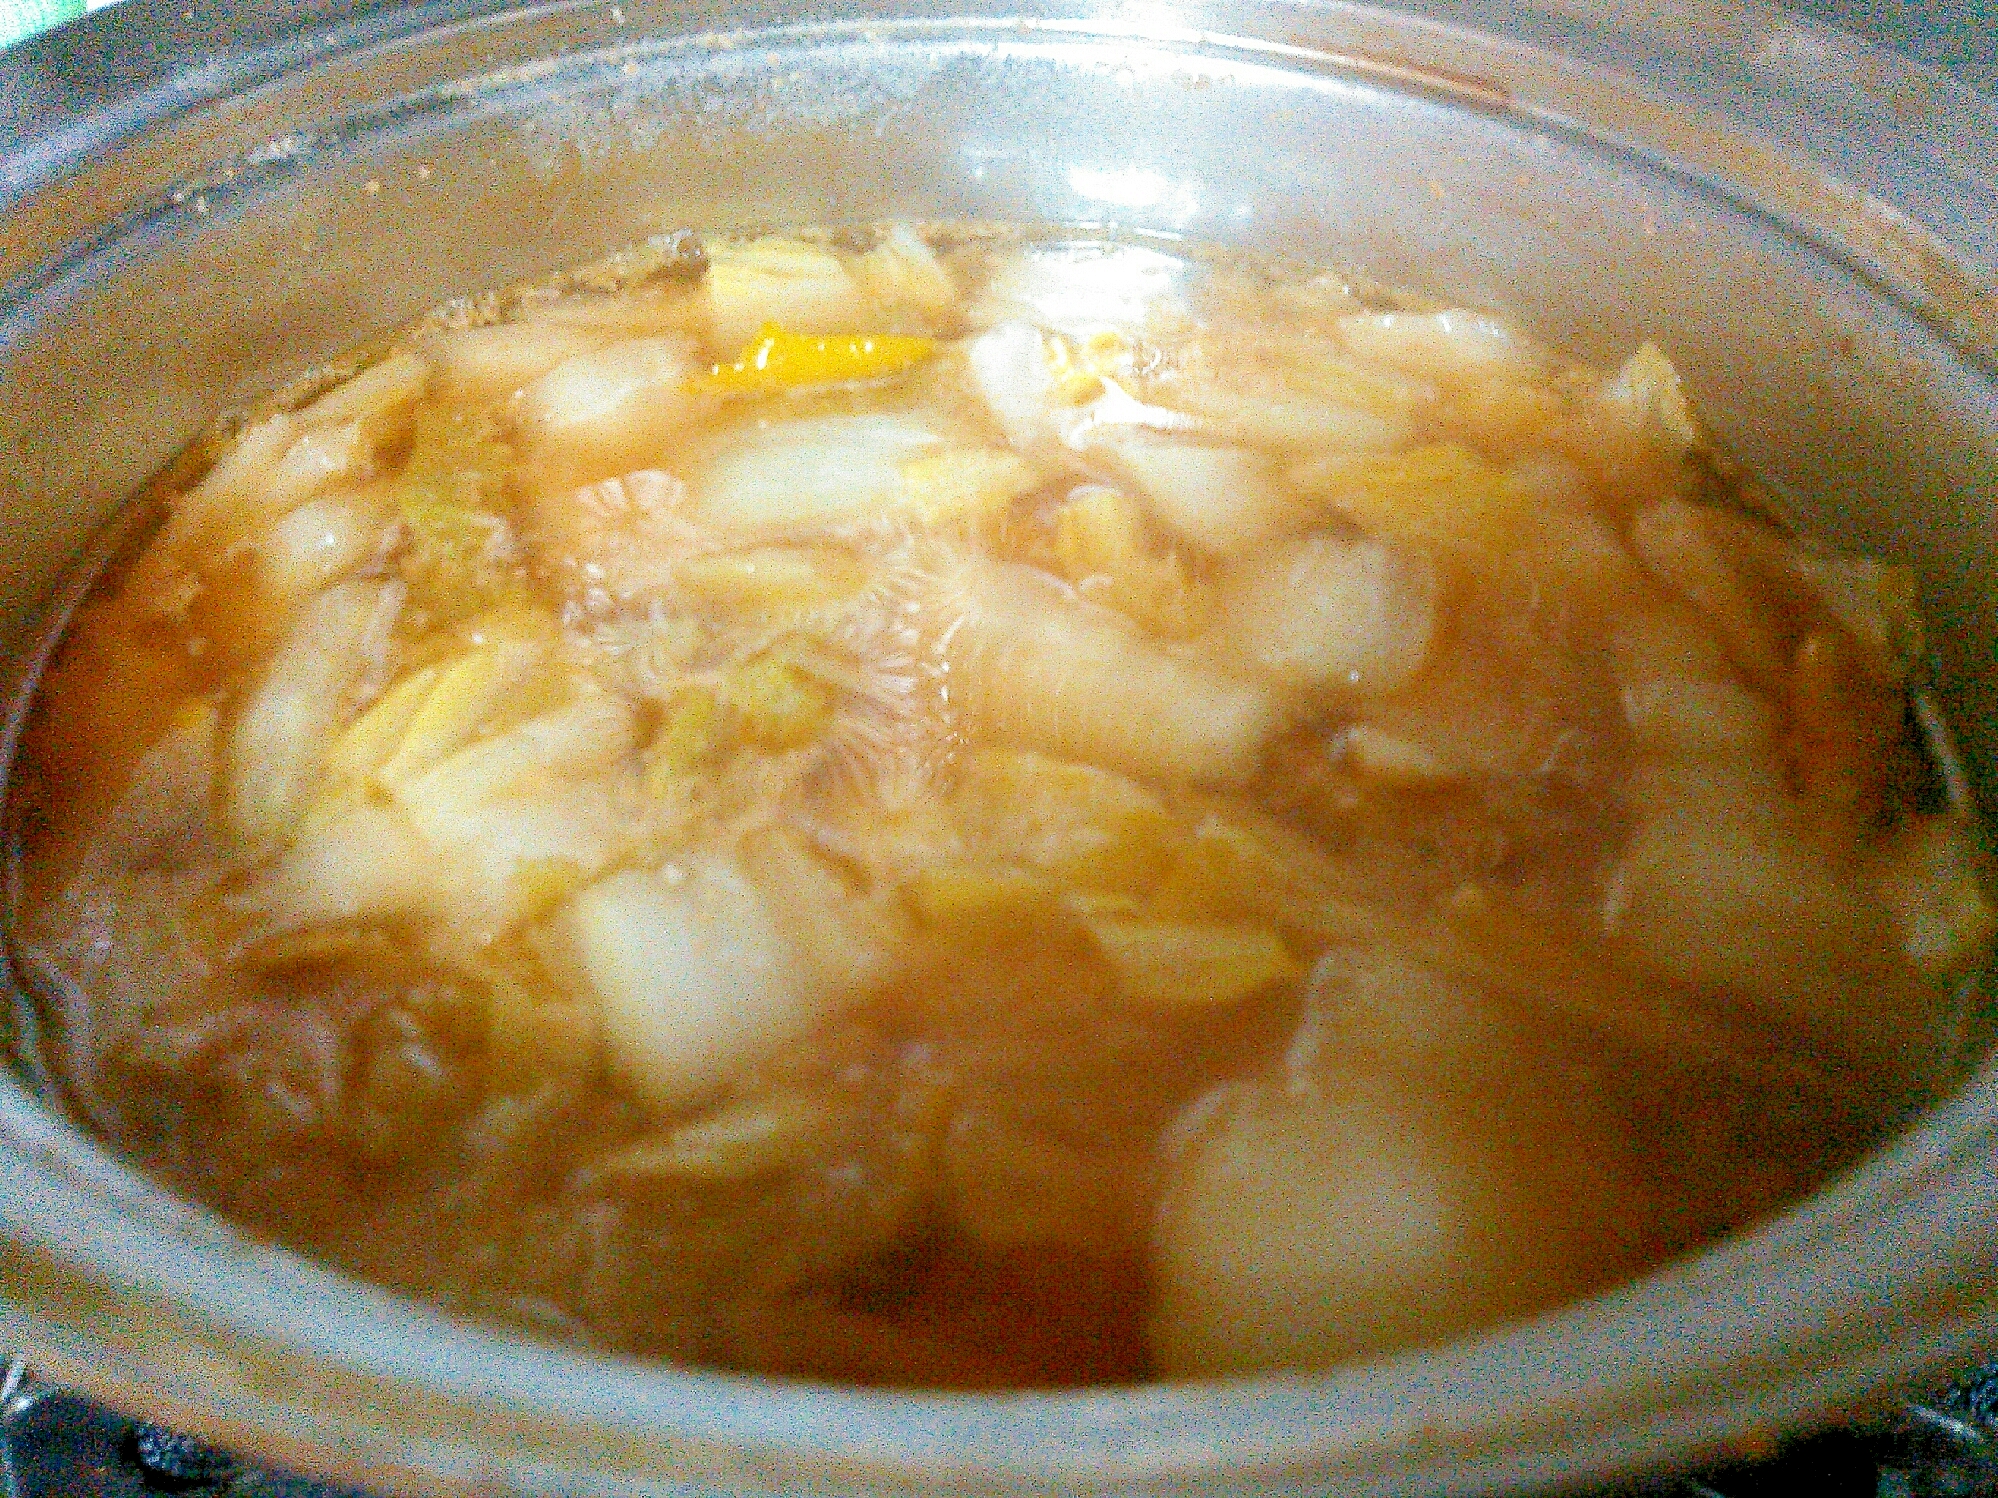 白菜の漬物と柚子のピリ辛味噌スープ